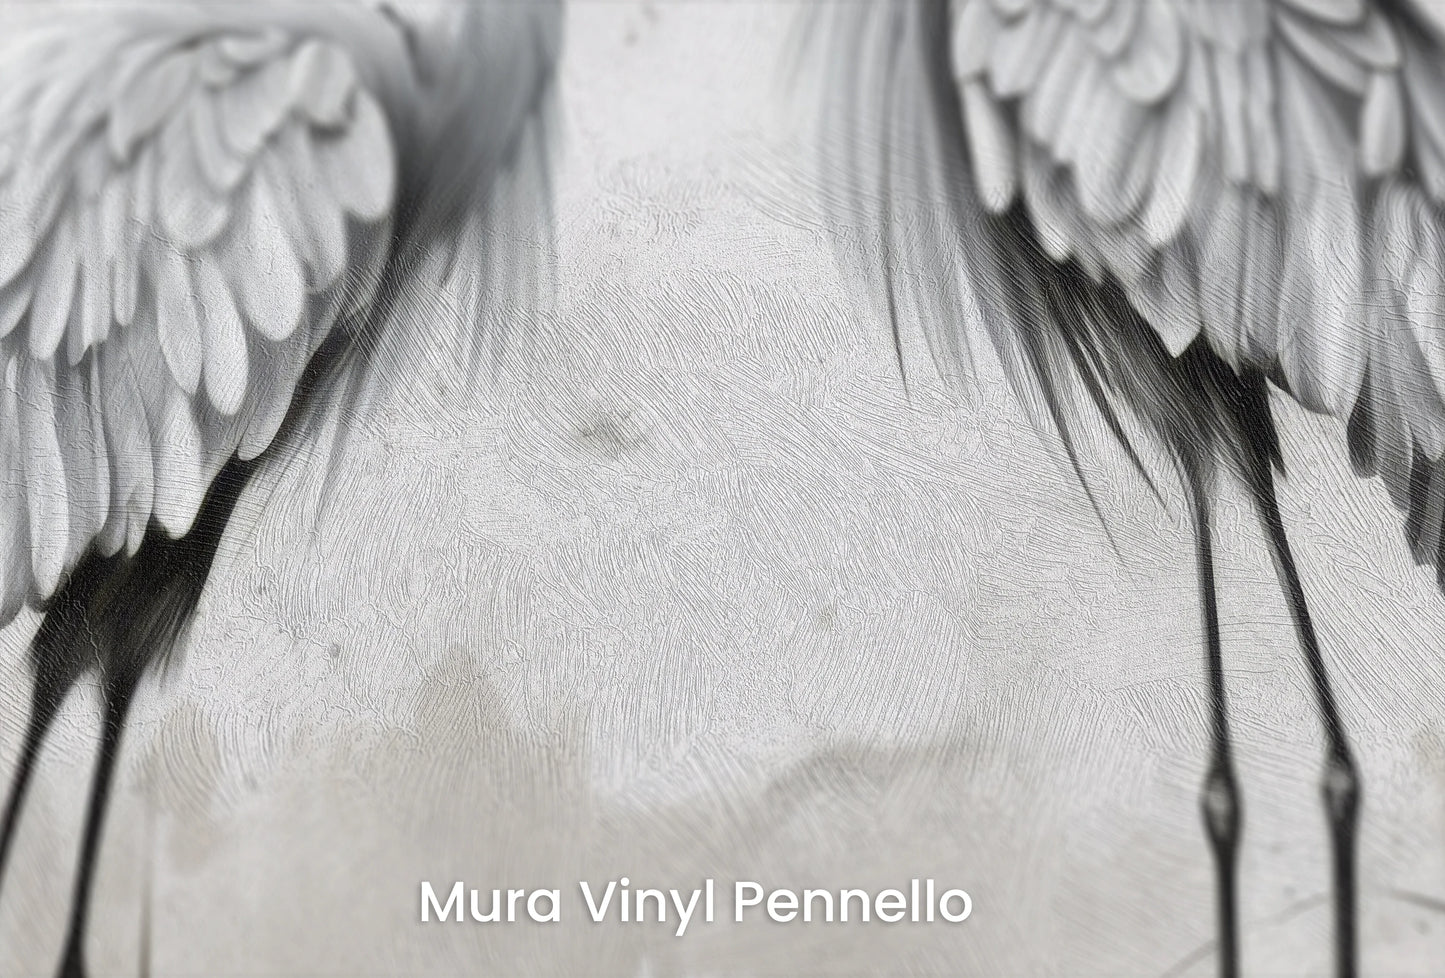 Zbliżenie na artystyczną fototapetę o nazwie Lunar Duo na podłożu Mura Vinyl Pennello - faktura pociągnięć pędzla malarskiego.